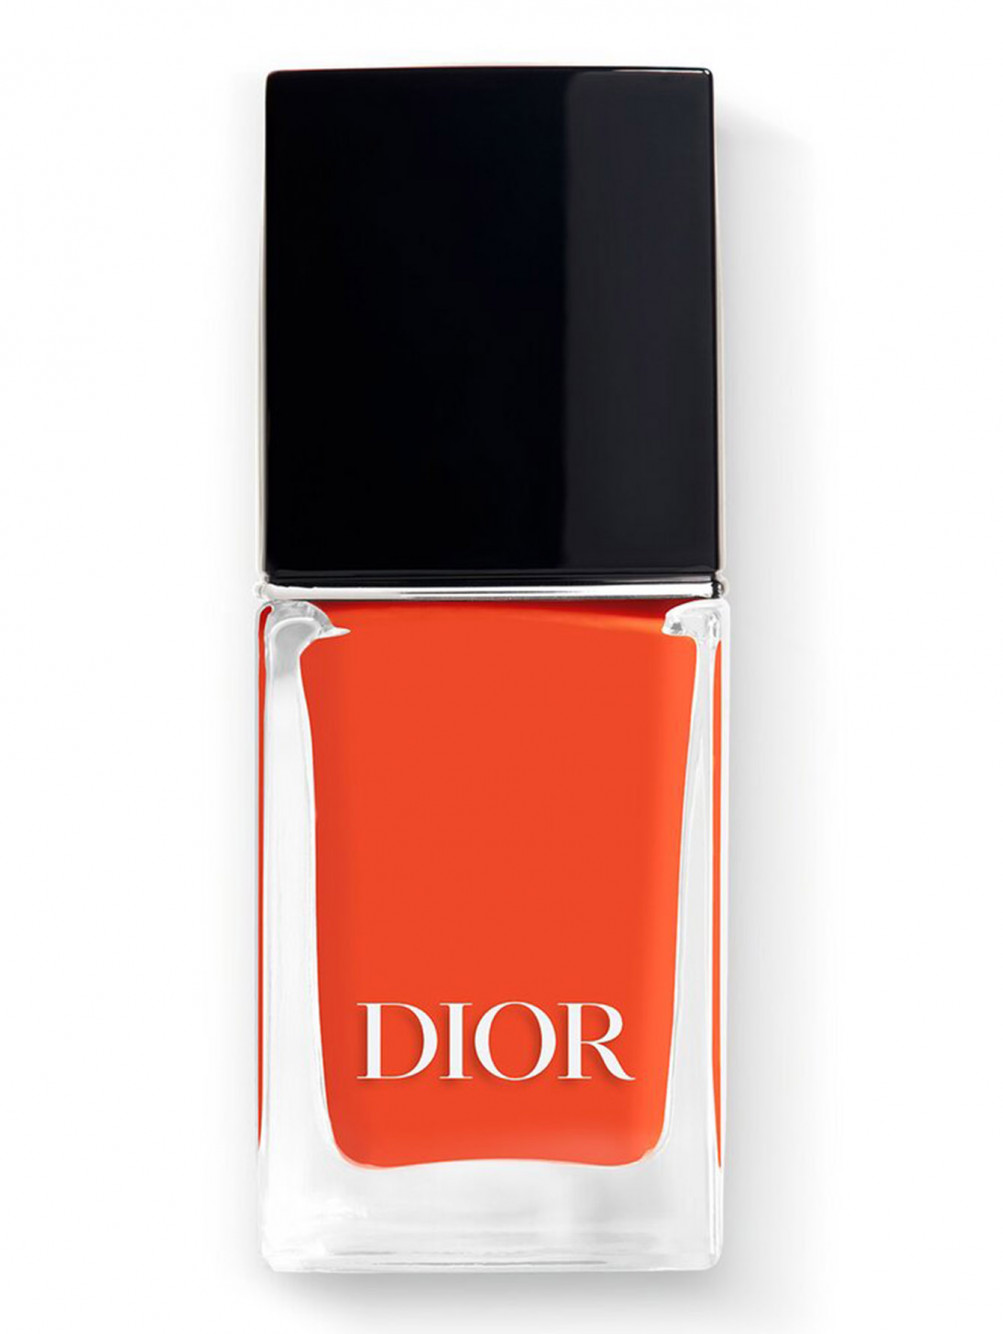 Лак для ногтей с эффектом гелевого покрытия Dior Vernis, 648 Мираж, 10 мл - Общий вид